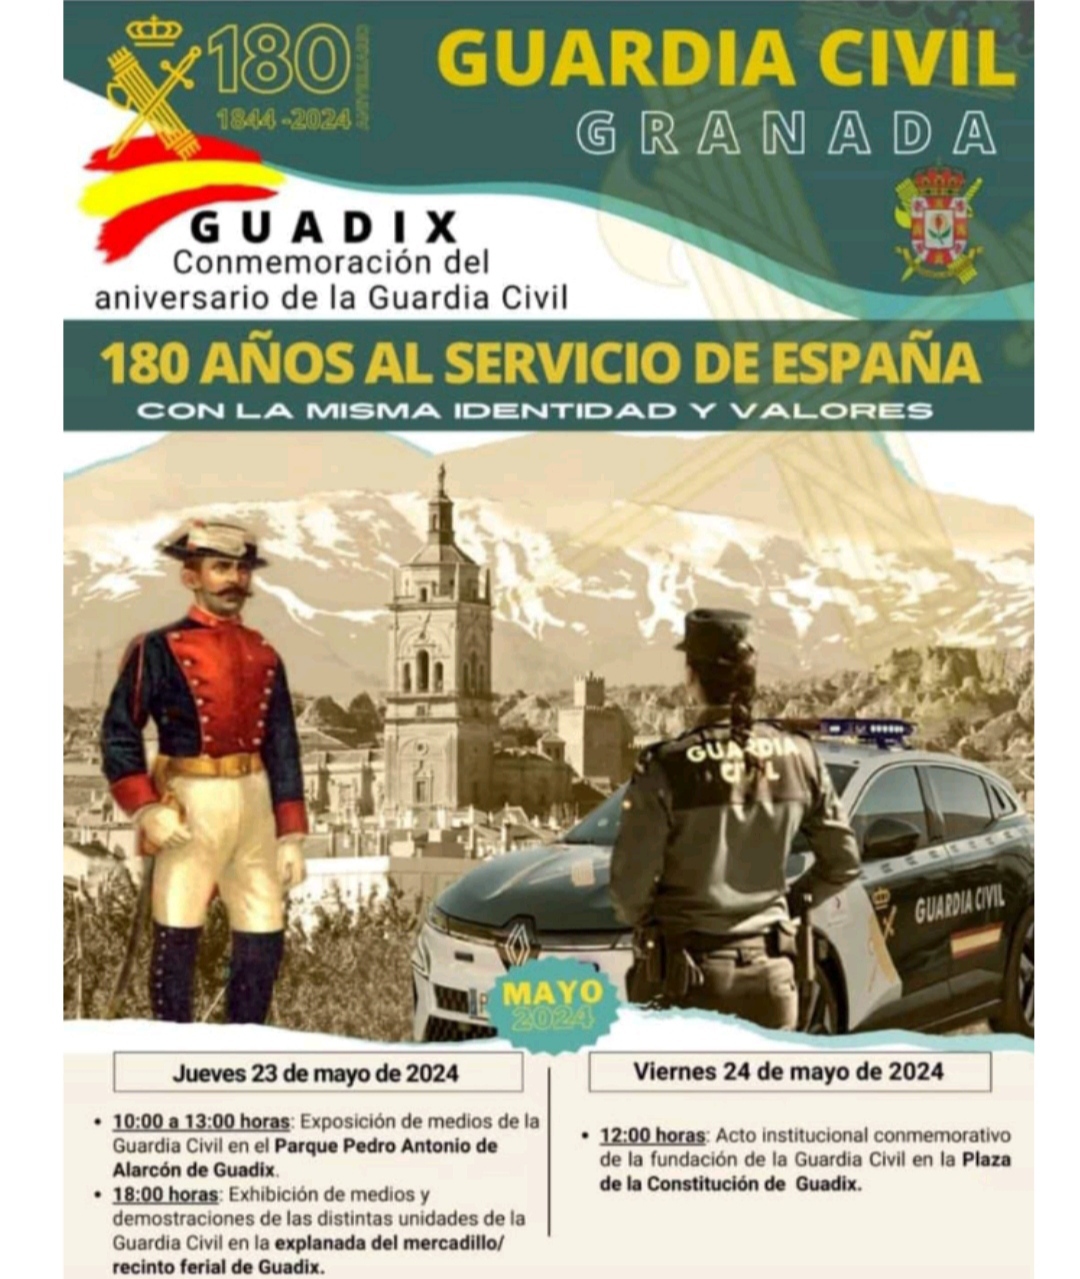 La Guardia Civil de Granada celebrar su 180 aniversario en Guadix este viernes